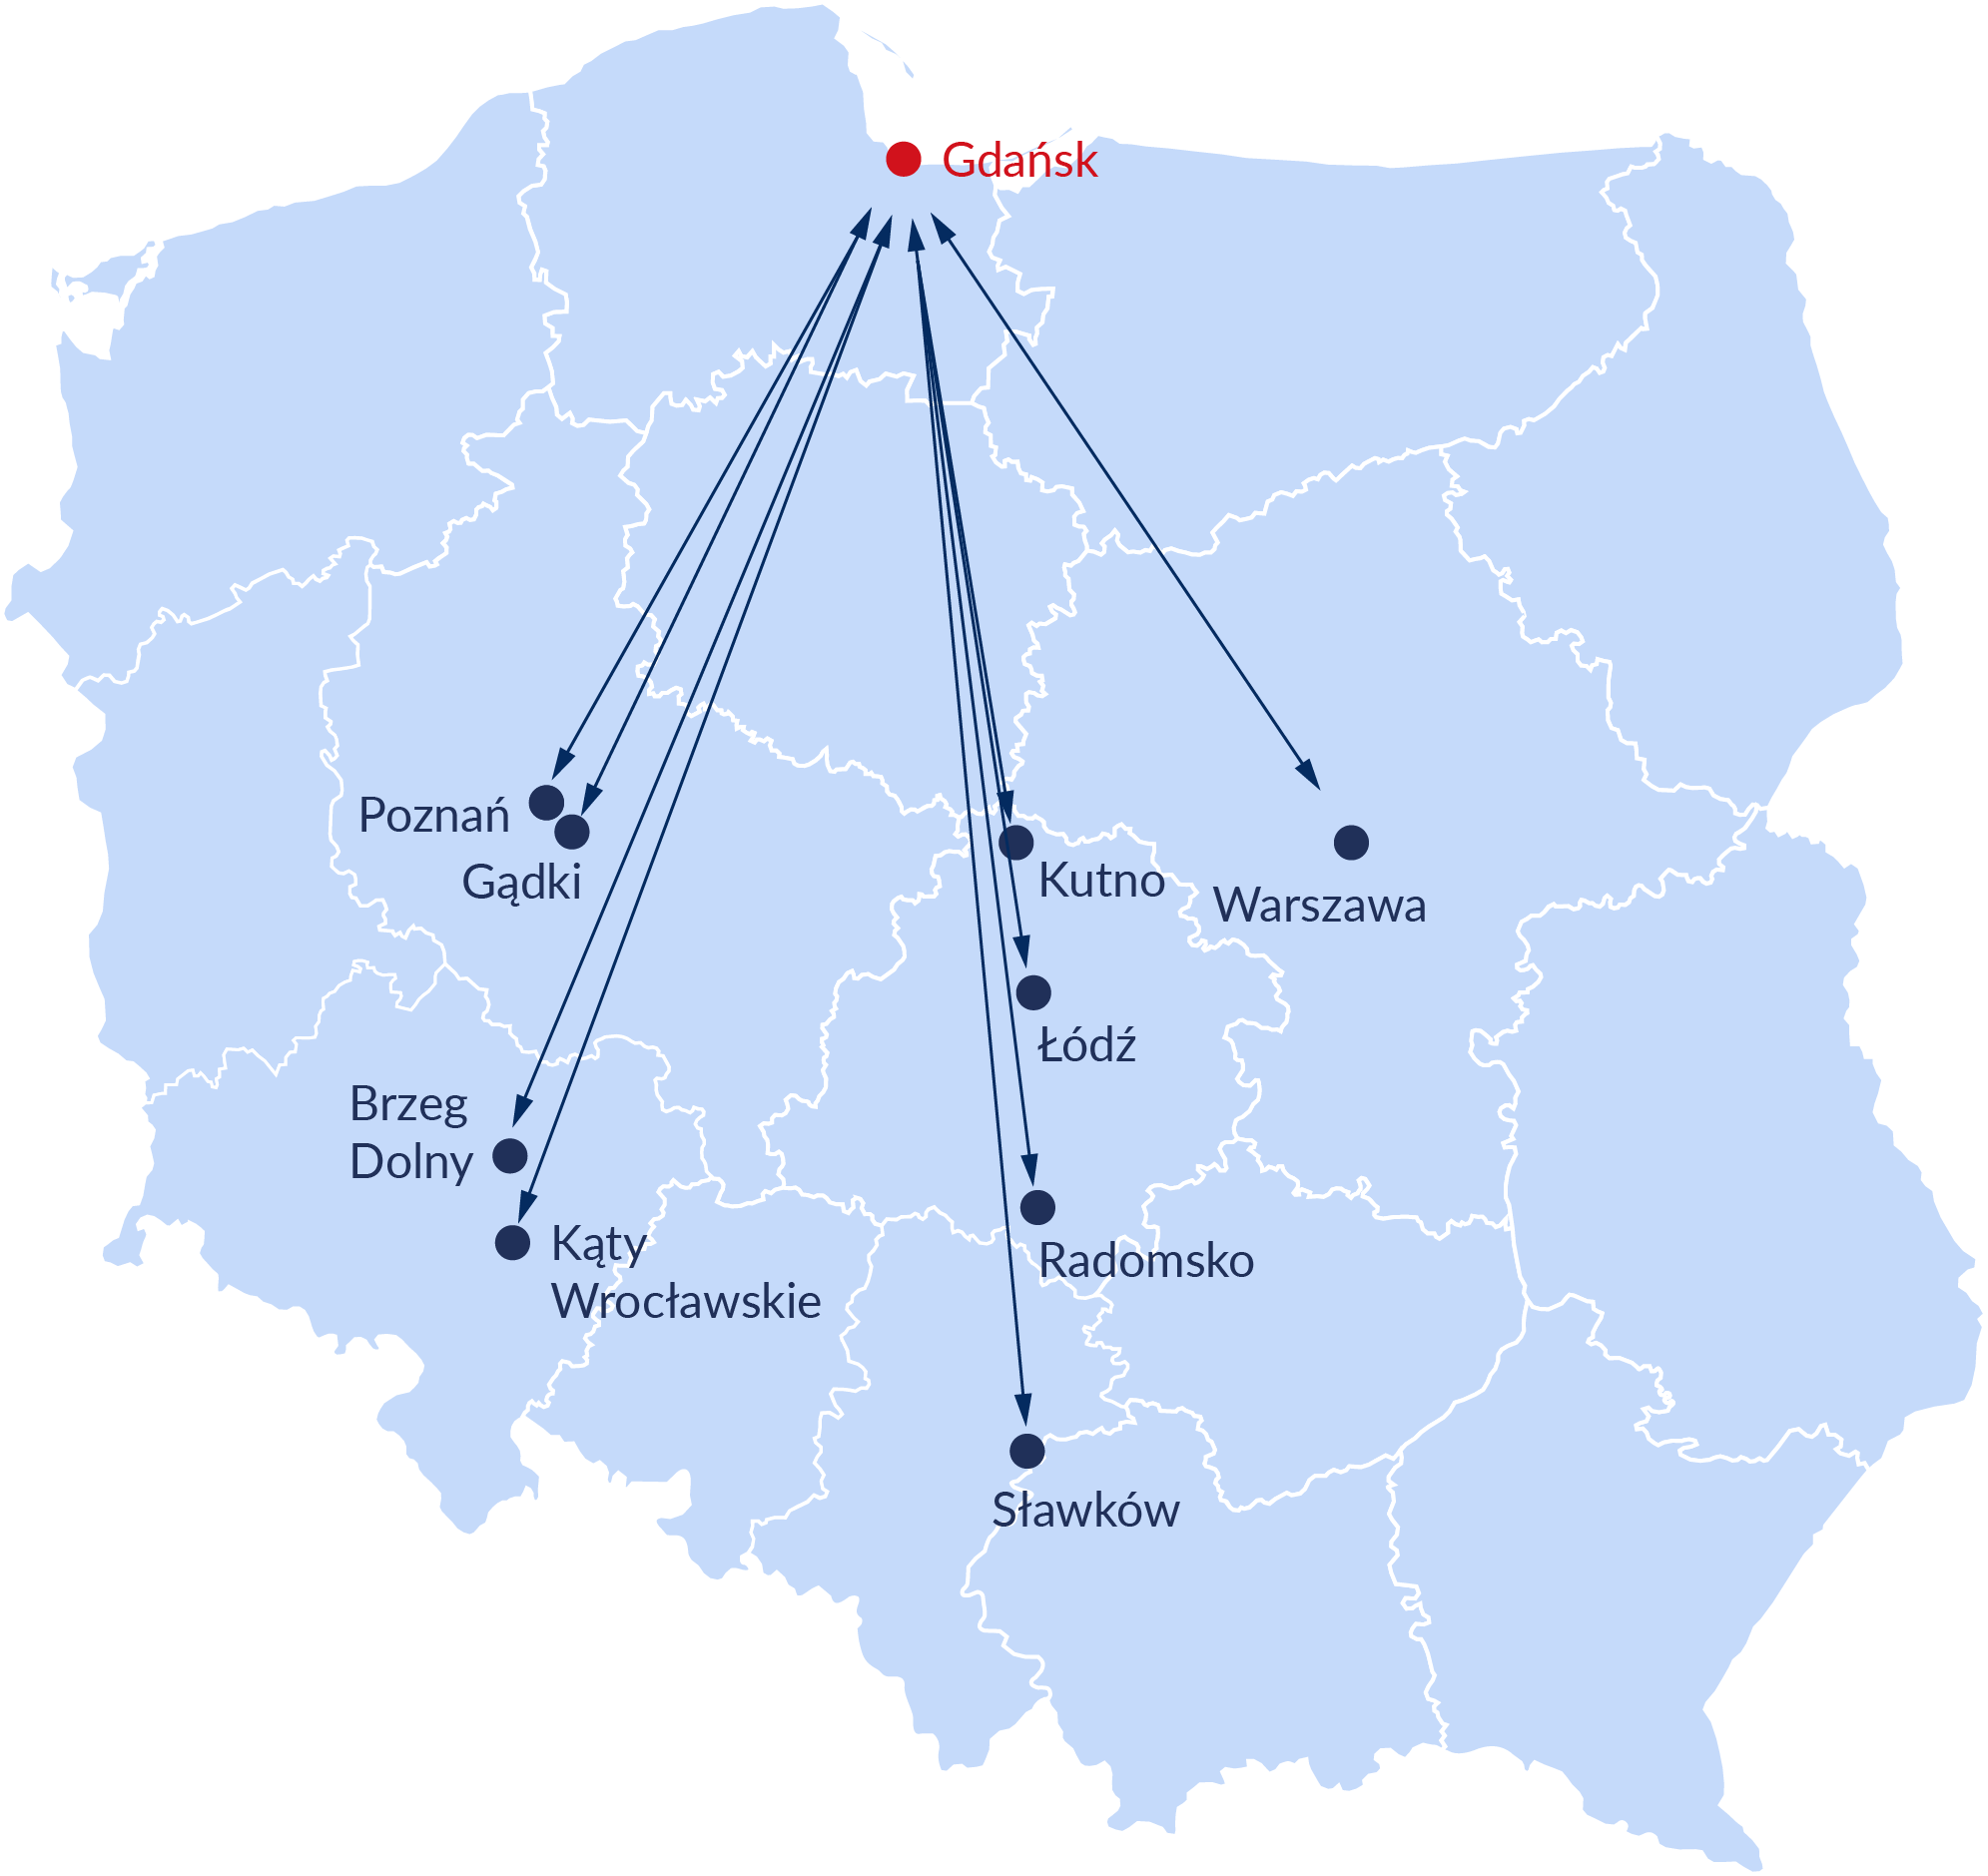 Grafika przedstawiająca mapę Polski z zanaczonymi Głównymi relacjami intermodalnymi uruchamiami z Portu Gdańsk